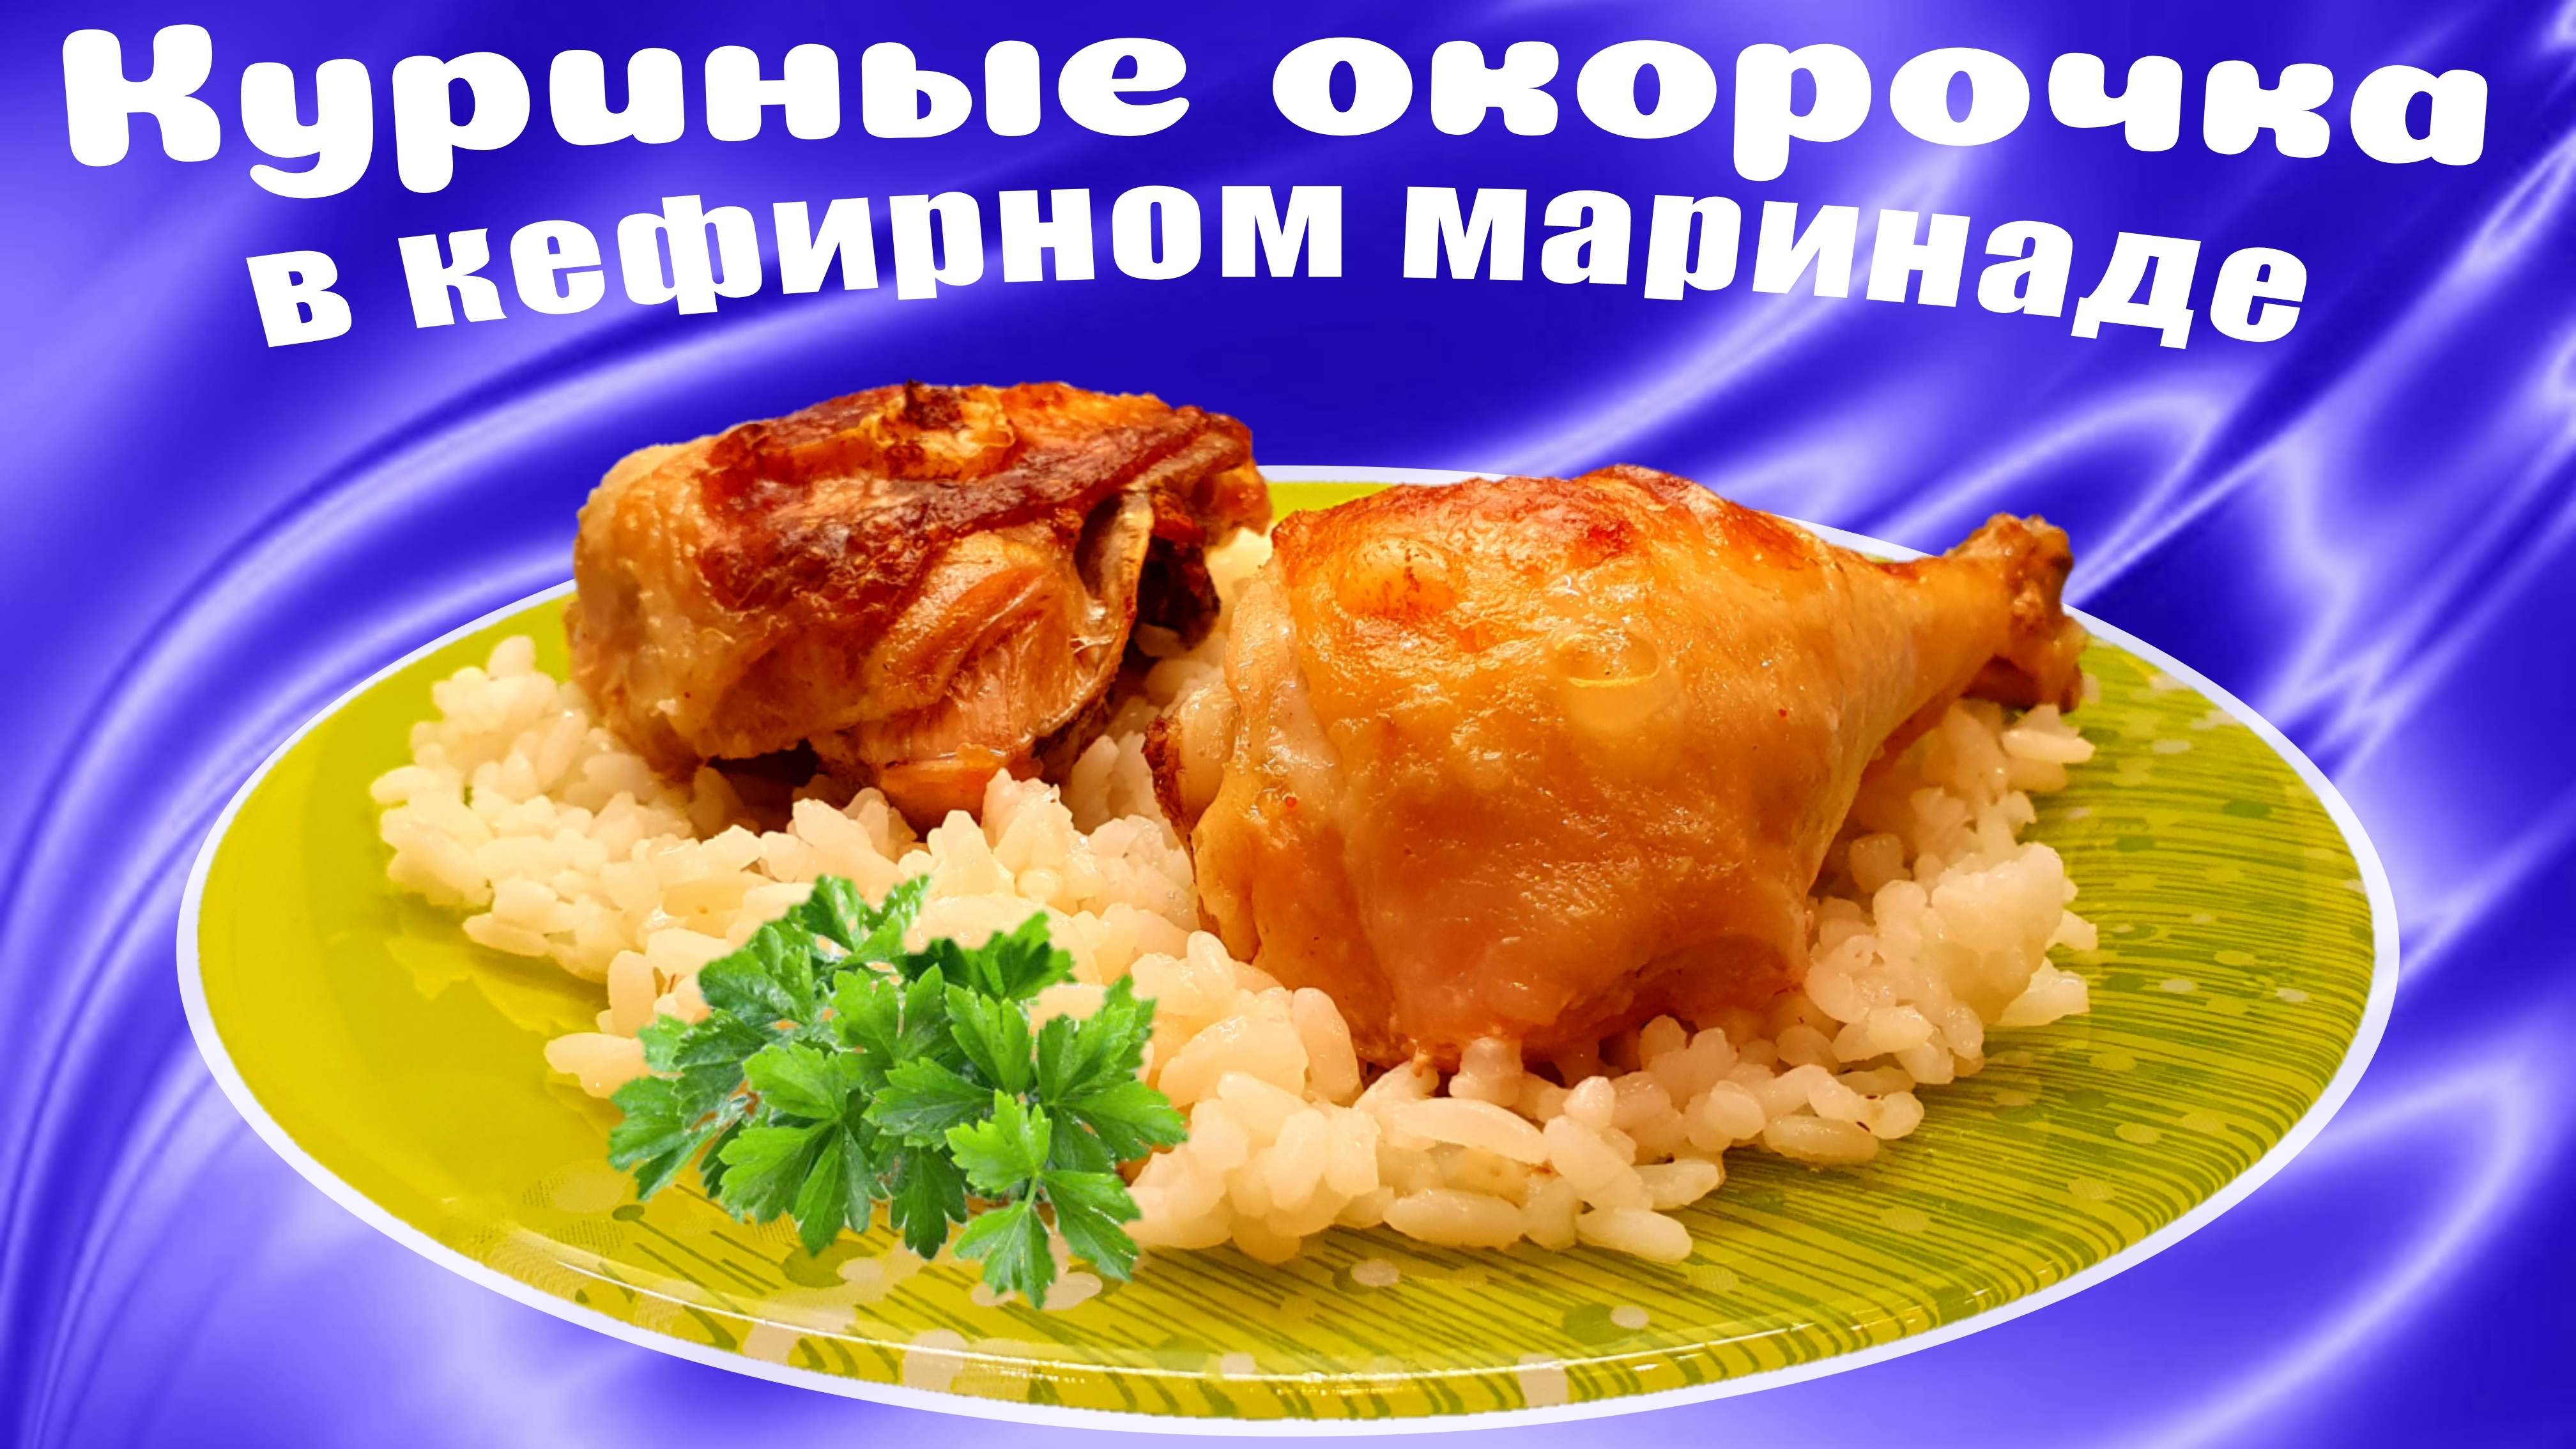 Курица (куриные окорочка) в духовке в кефирном маринаде